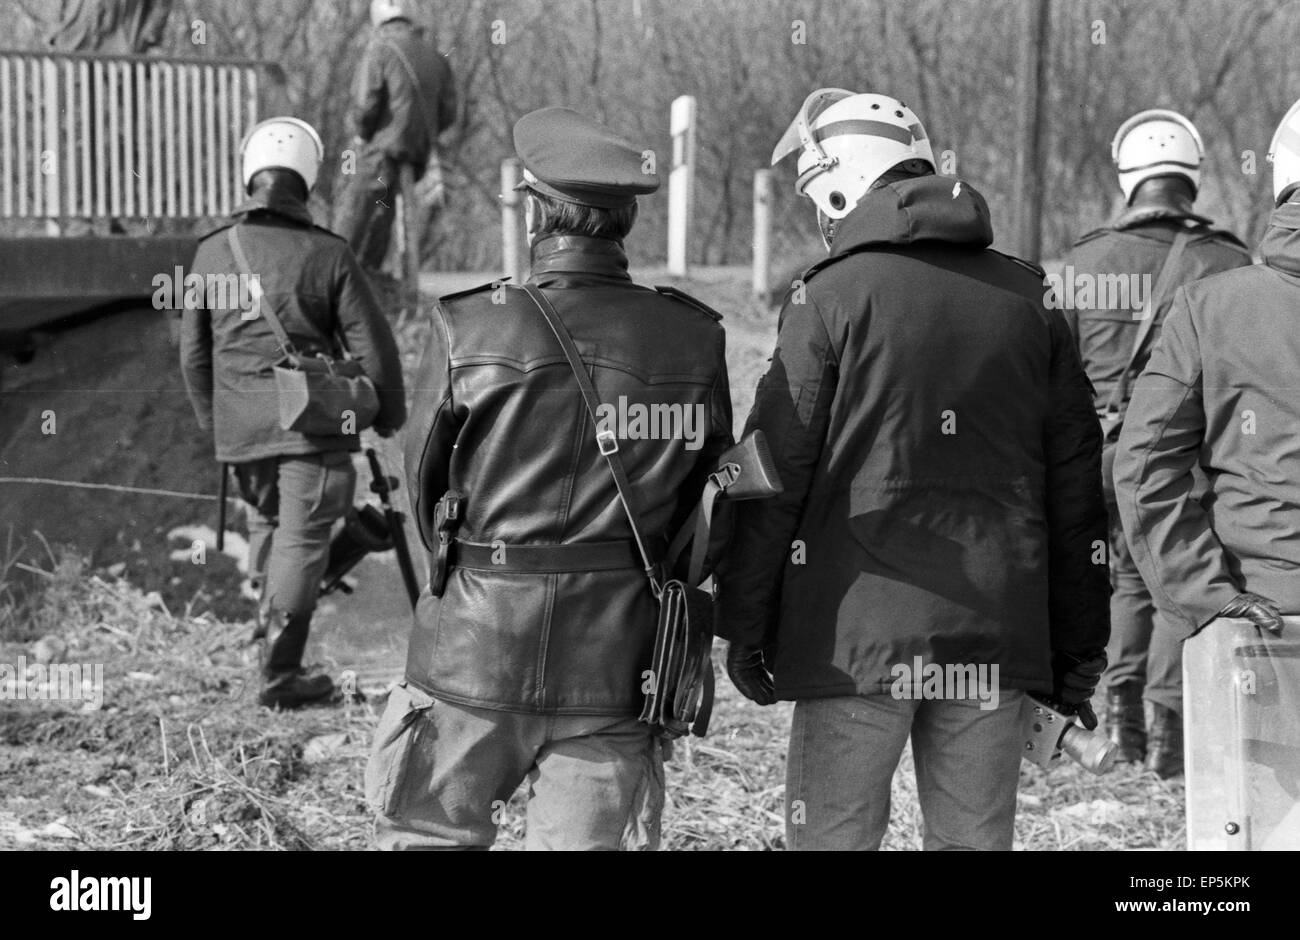 Polizeieinsatzkräfte verschaffen sich einen Überblick am Kernkraftwerk in Brokdorf, Deutschland 1980er Jahre. Scansione di polizia th Foto Stock